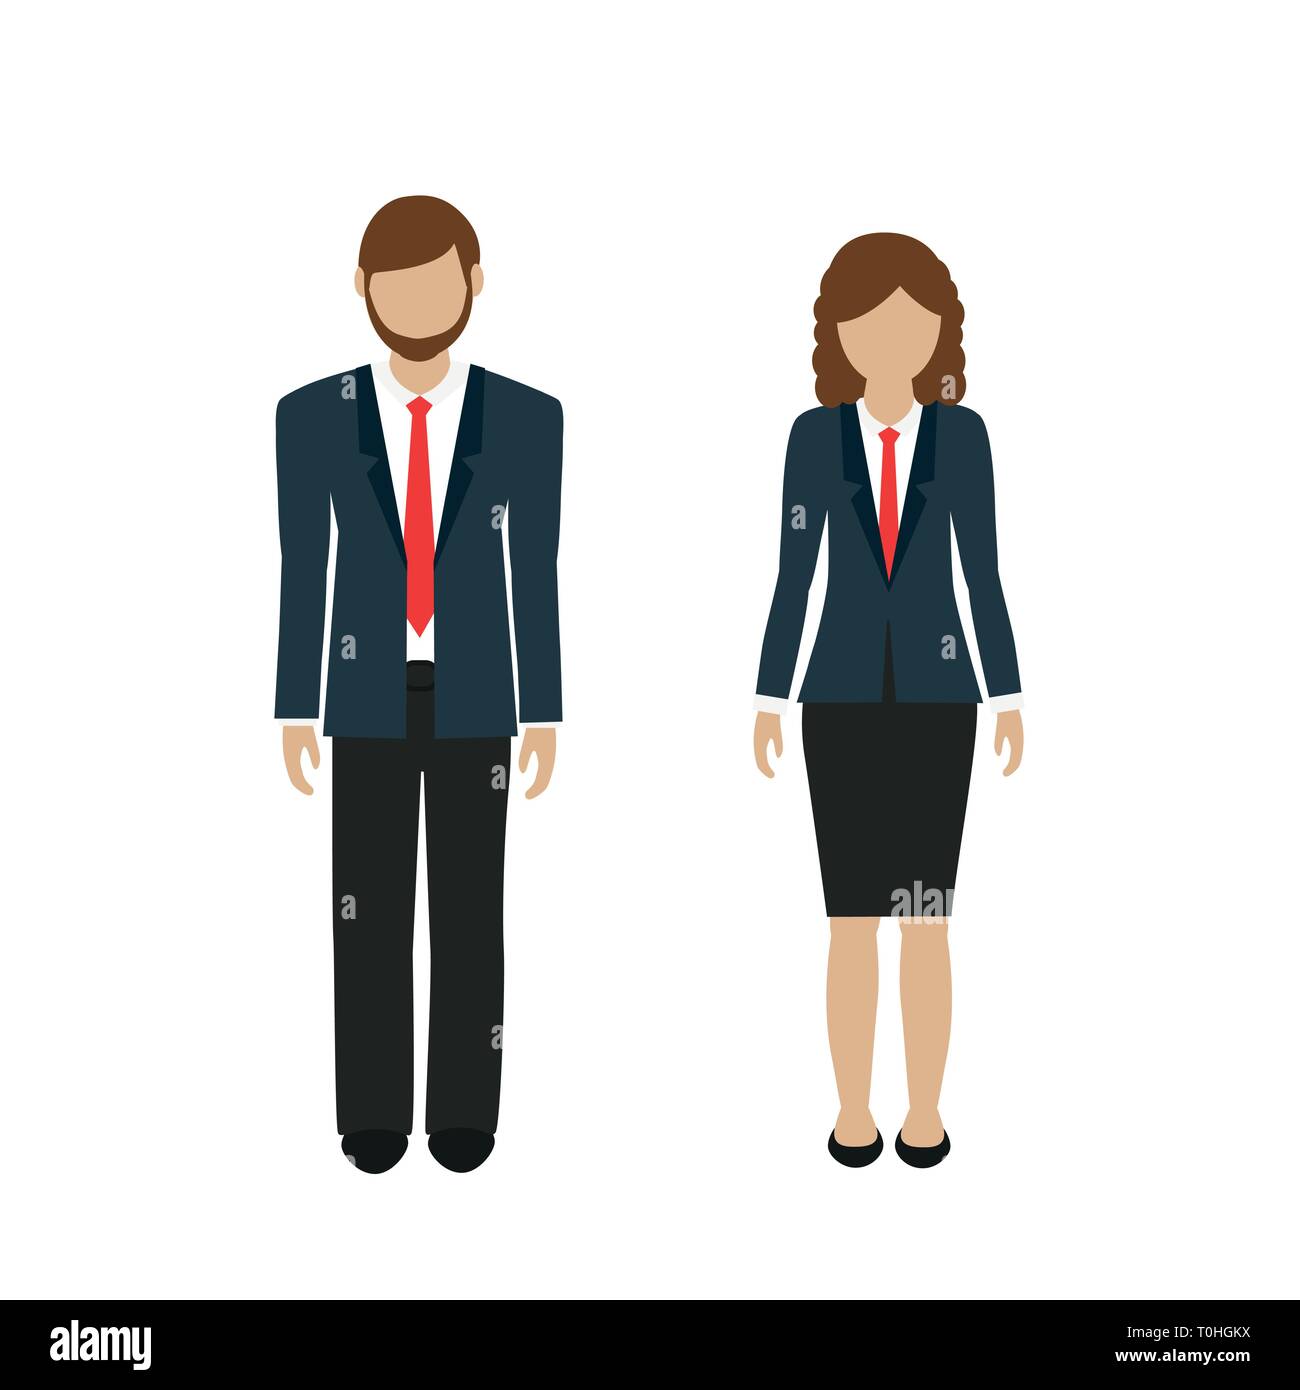 Mann und Frau Charakter in Business Look auf weißem Hintergrund Vektor-illustration EPS 10 isoliert Stock Vektor